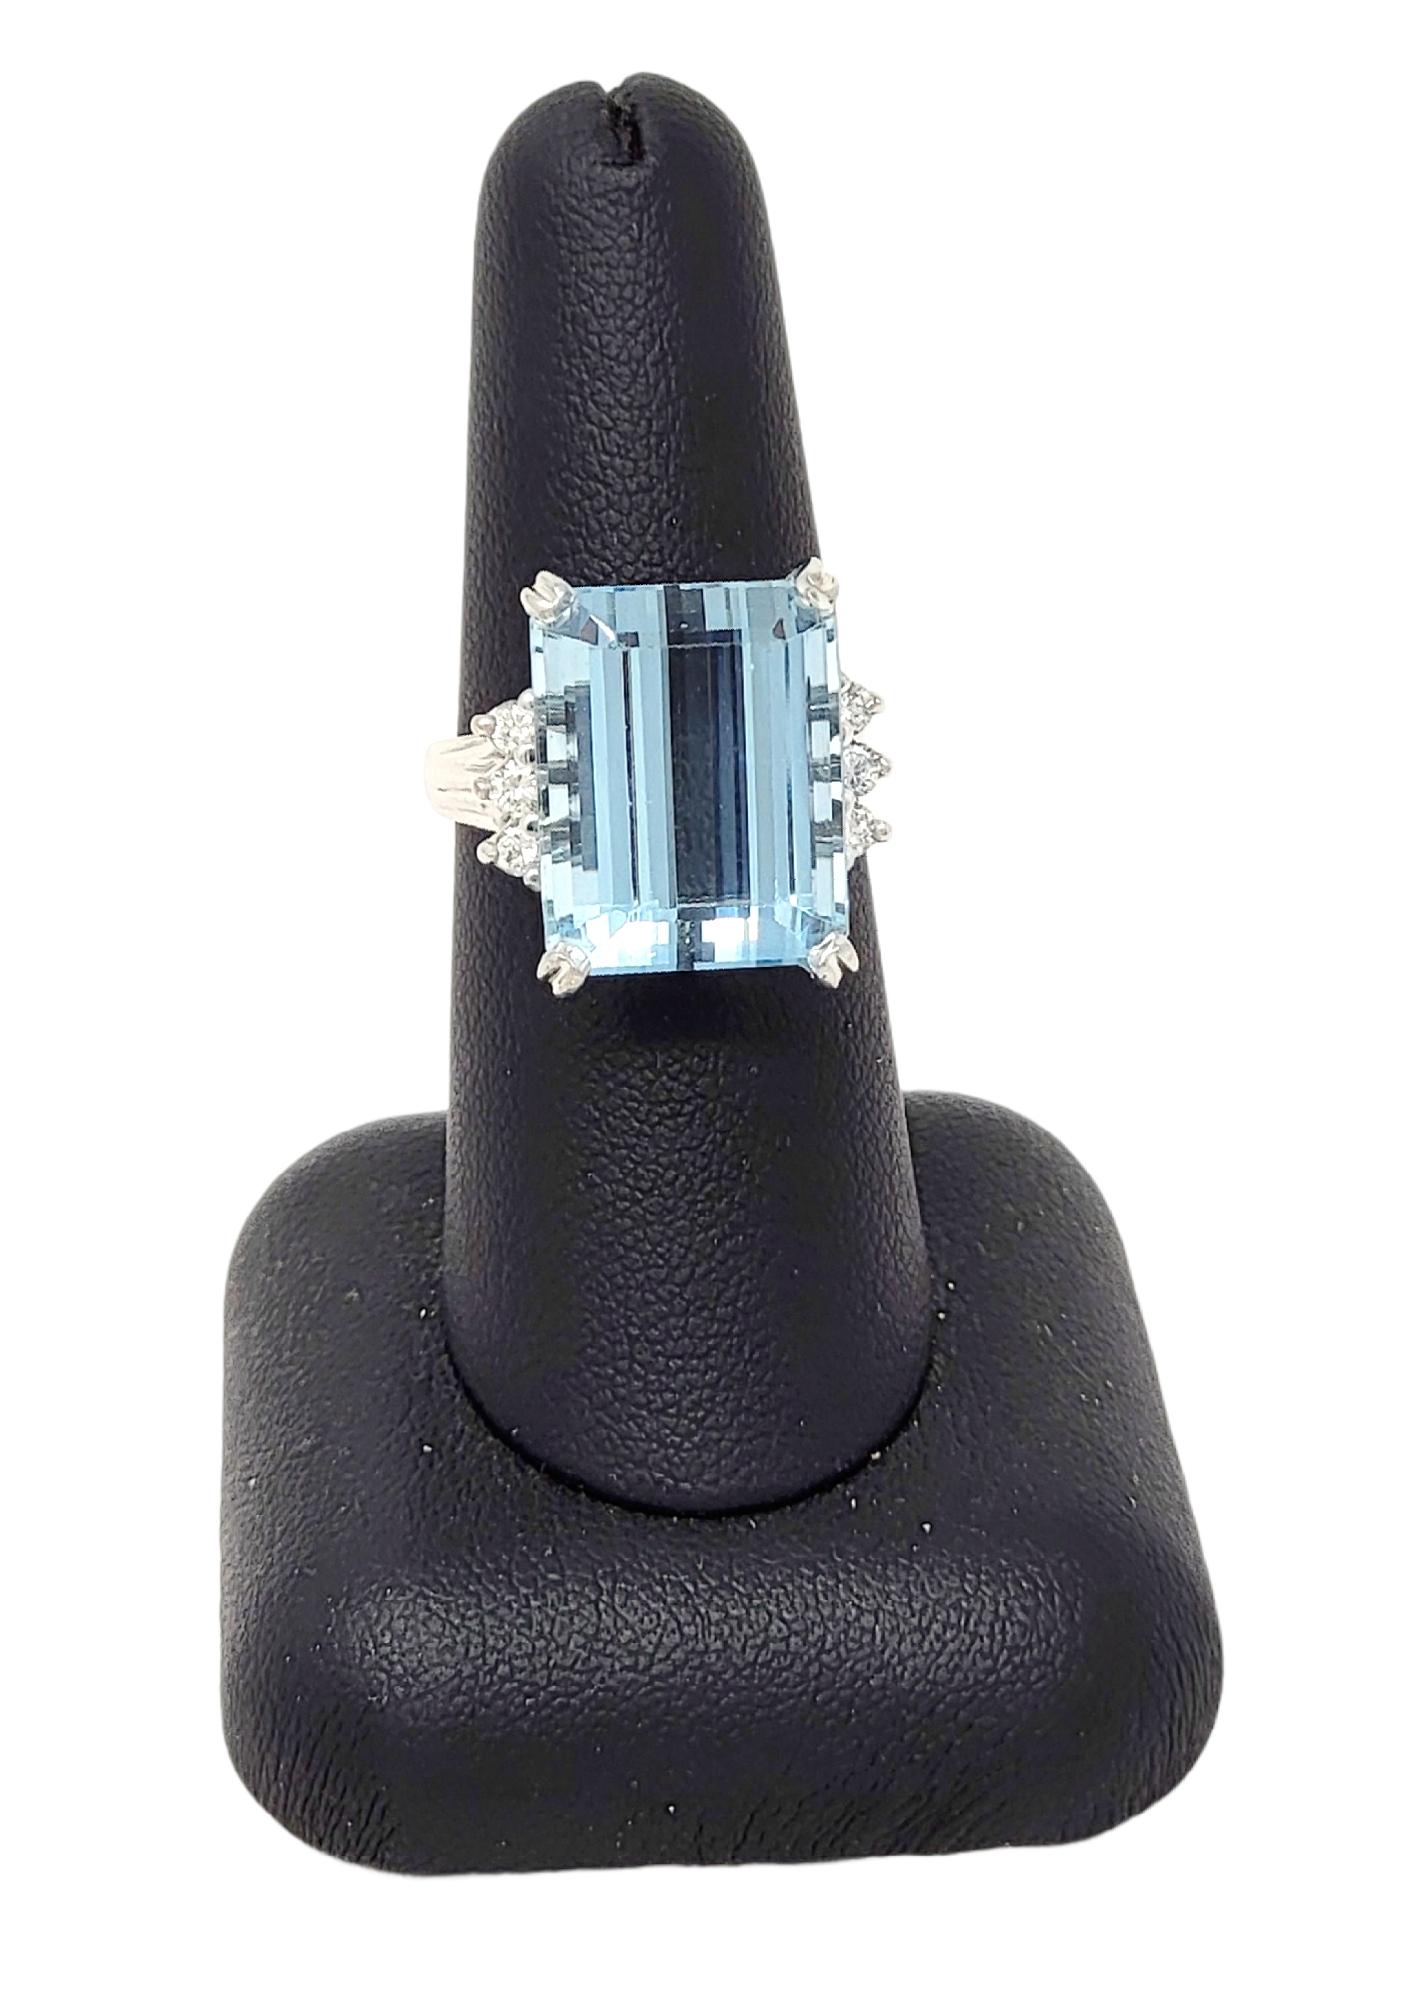 Ringgröße: 7.25

Atemberaubender Aquamarin- und Diamant-Cocktailring. Dieses auffällige Stück setzt mit seiner beeindruckenden Größe und seiner exquisiten Farbe ein markantes Zeichen. Der unglaubliche Aquamarin von 14,53 Karat im Smaragdschliff ist